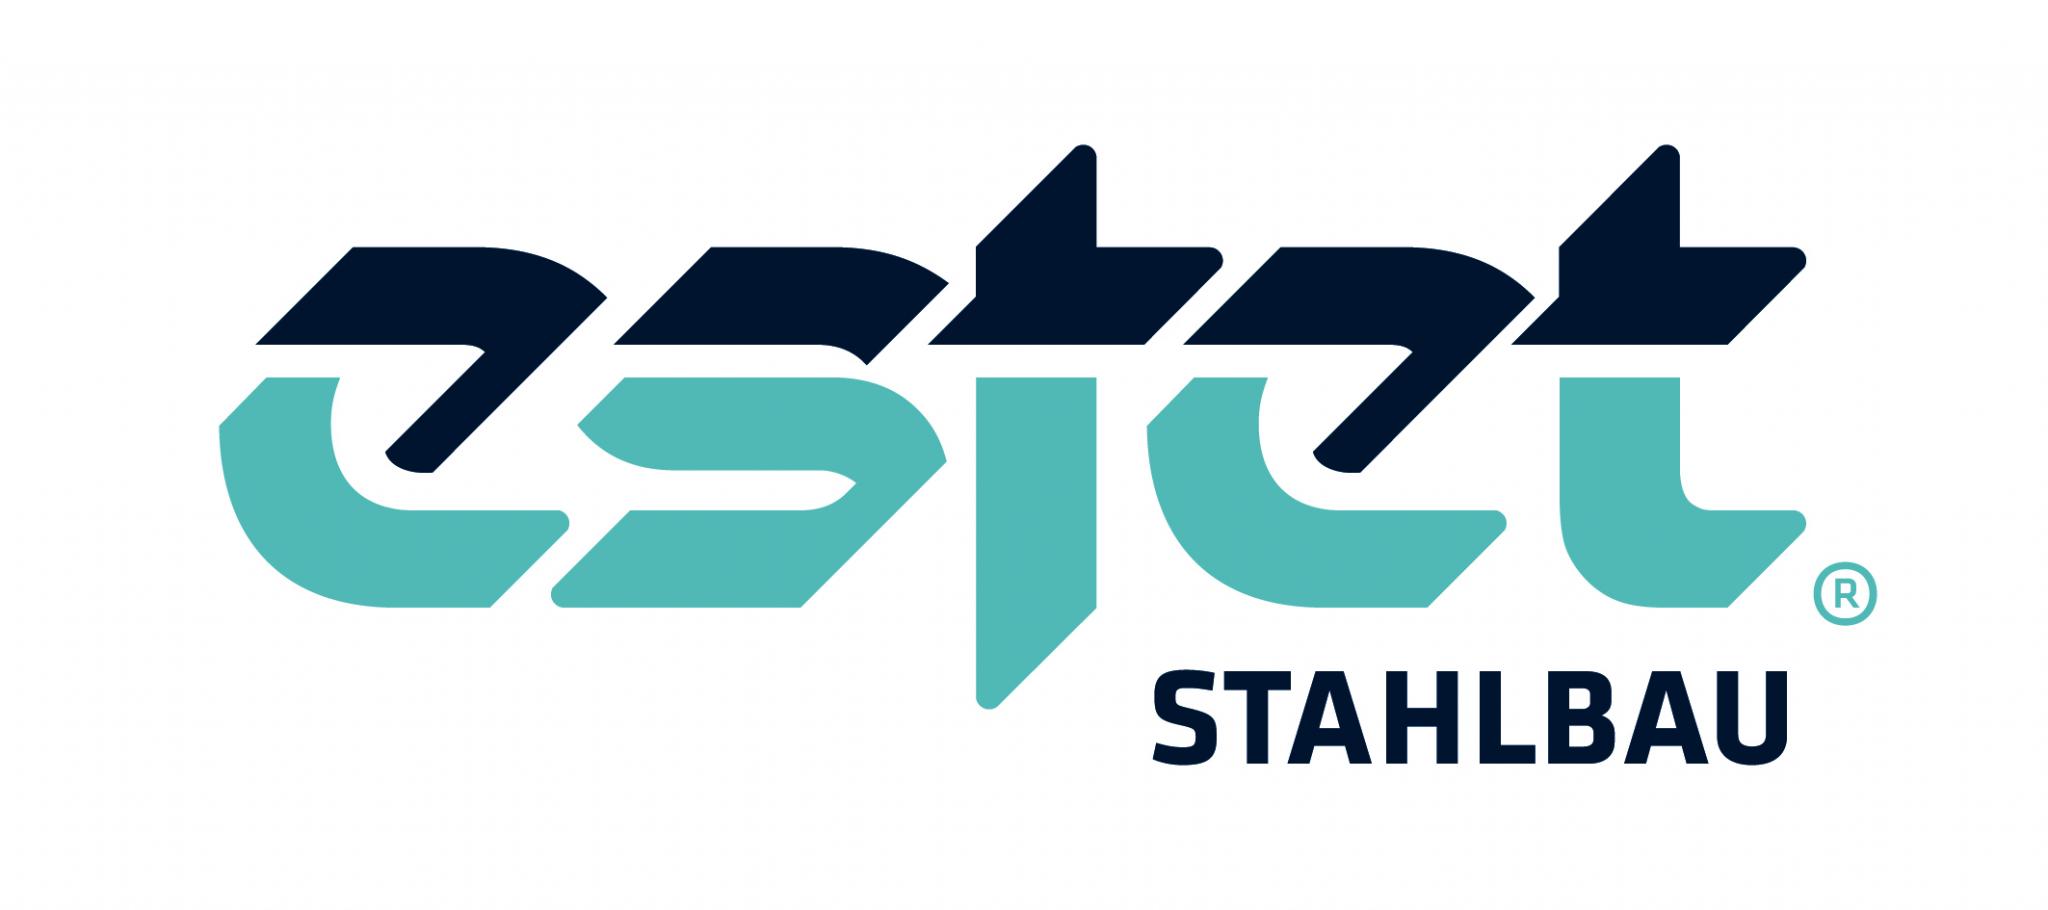 ESTET Stahl- und Behälterbau - Logo